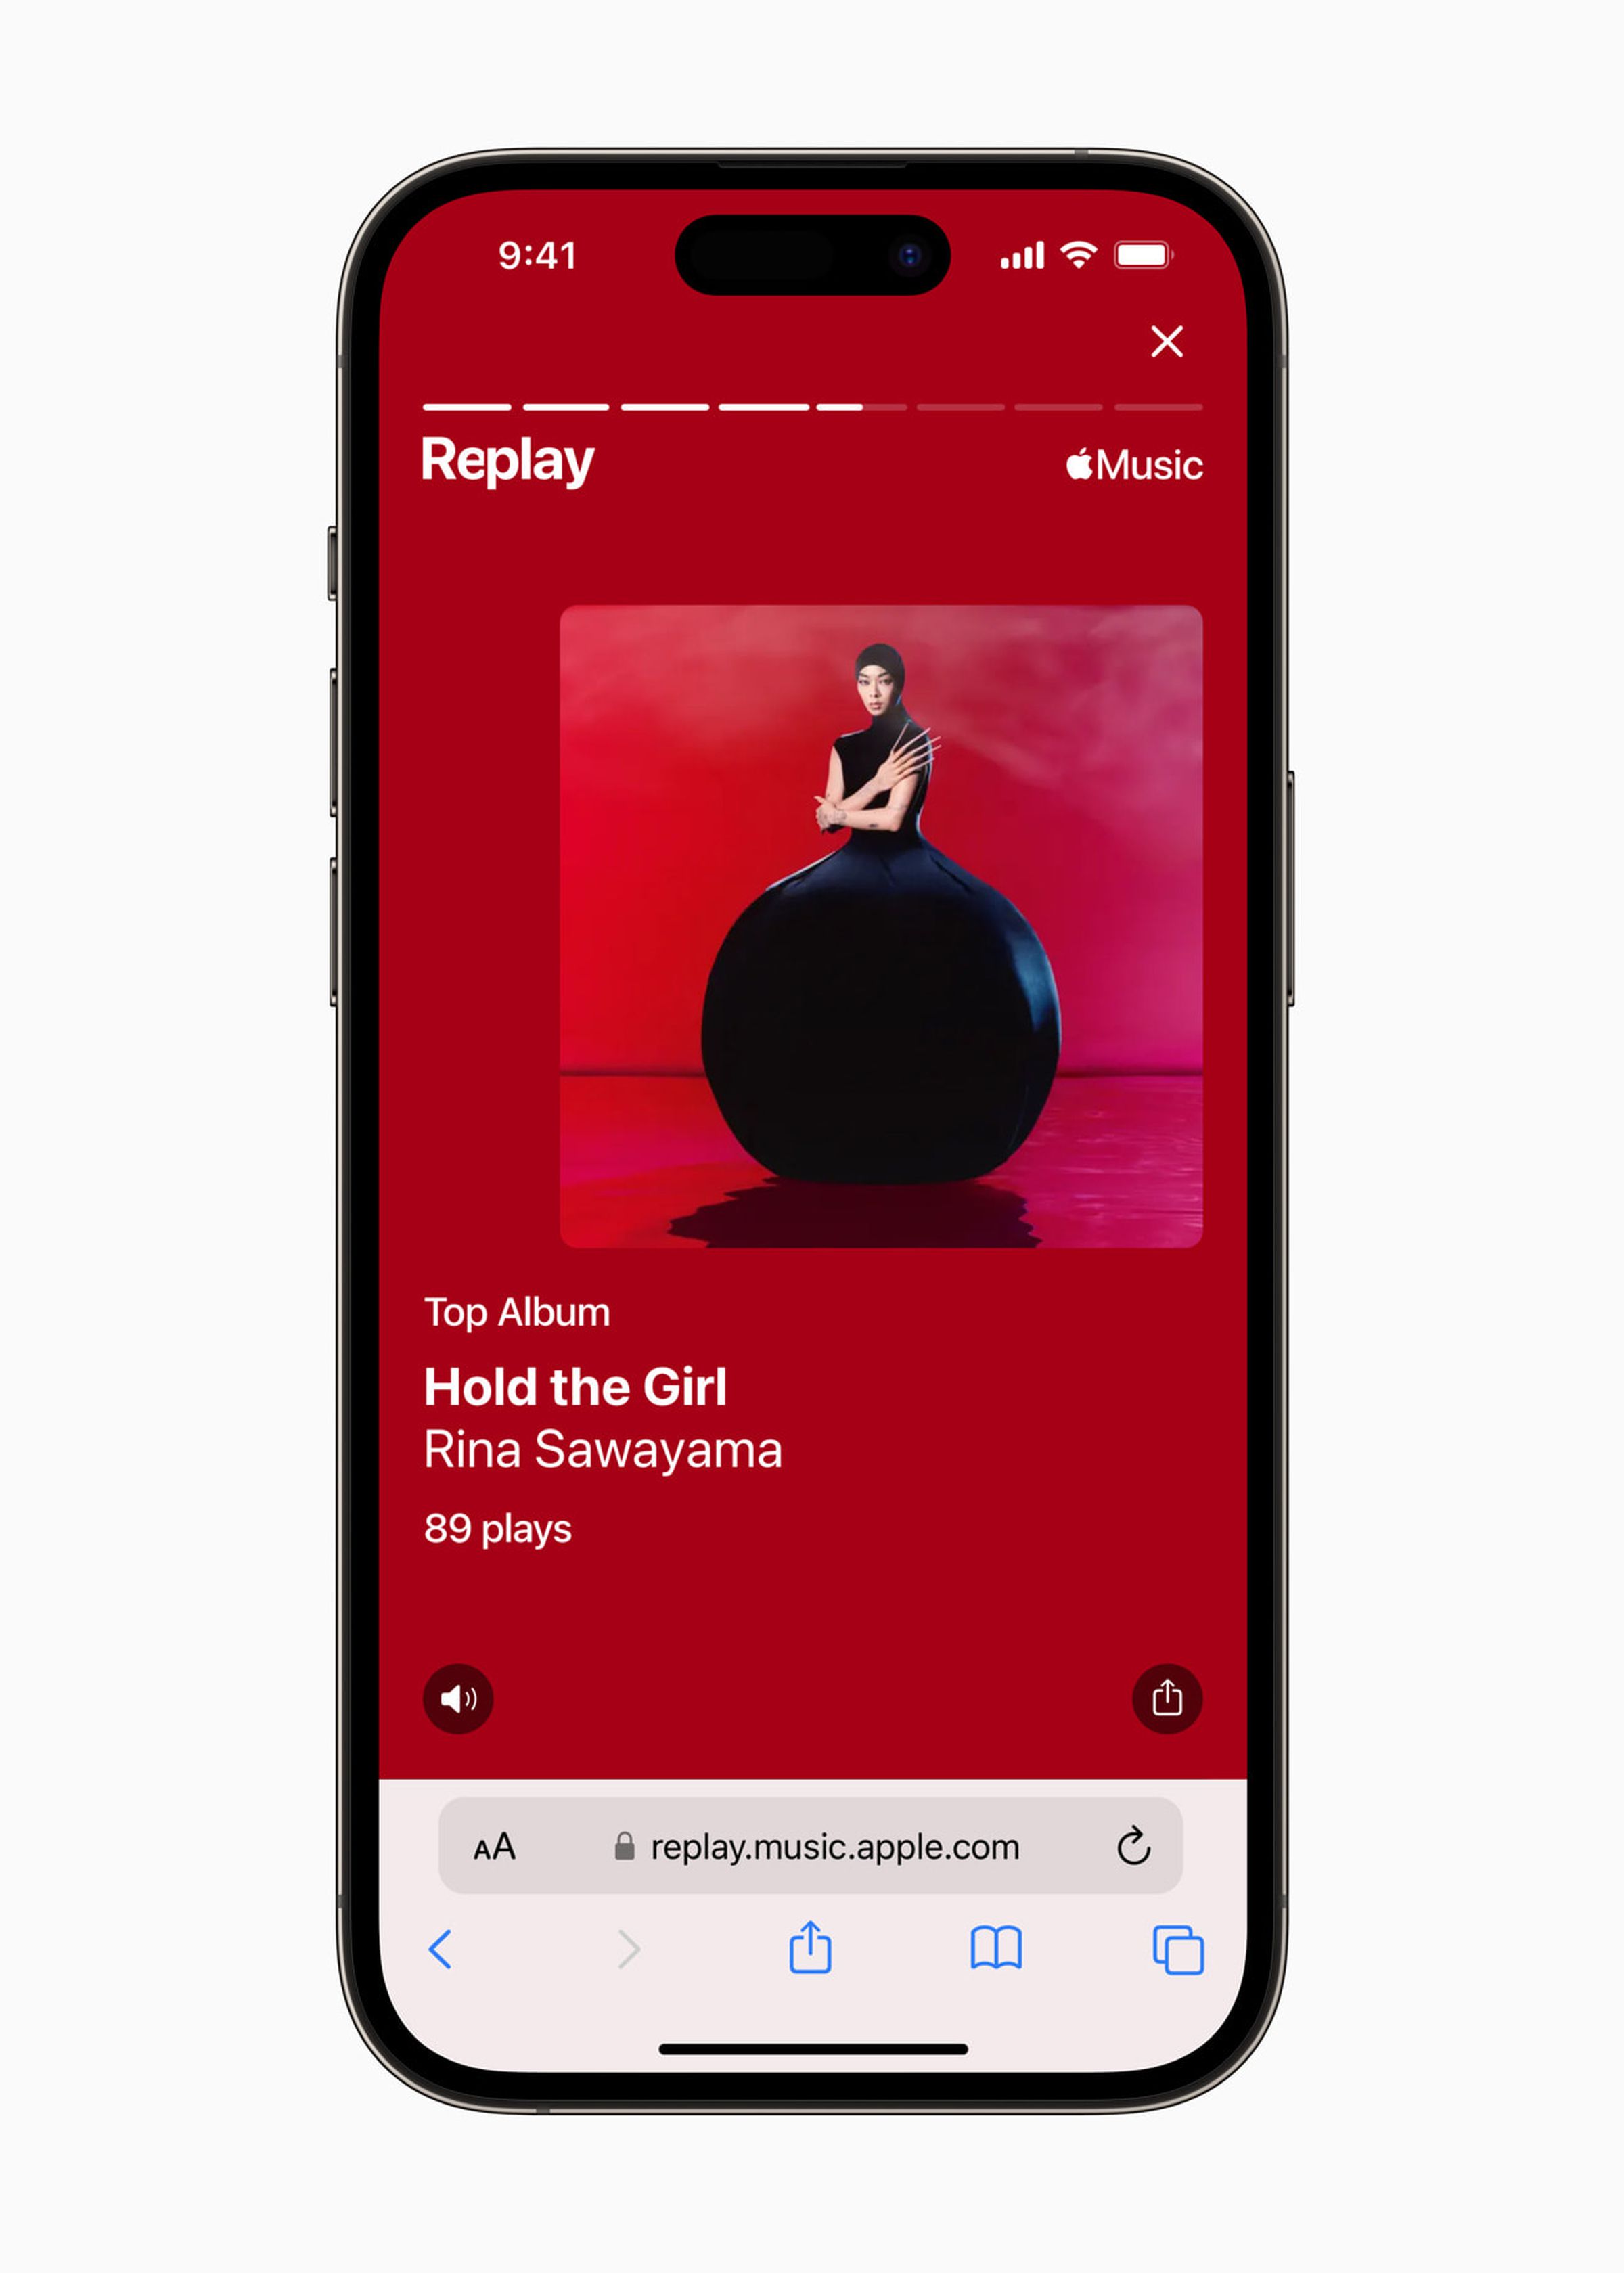 Apple Music Replay görüntüsü, bir dinleyicinin en iyi albümü olan Rina Sawayama'nın Hold the Girl albümünü içerir.